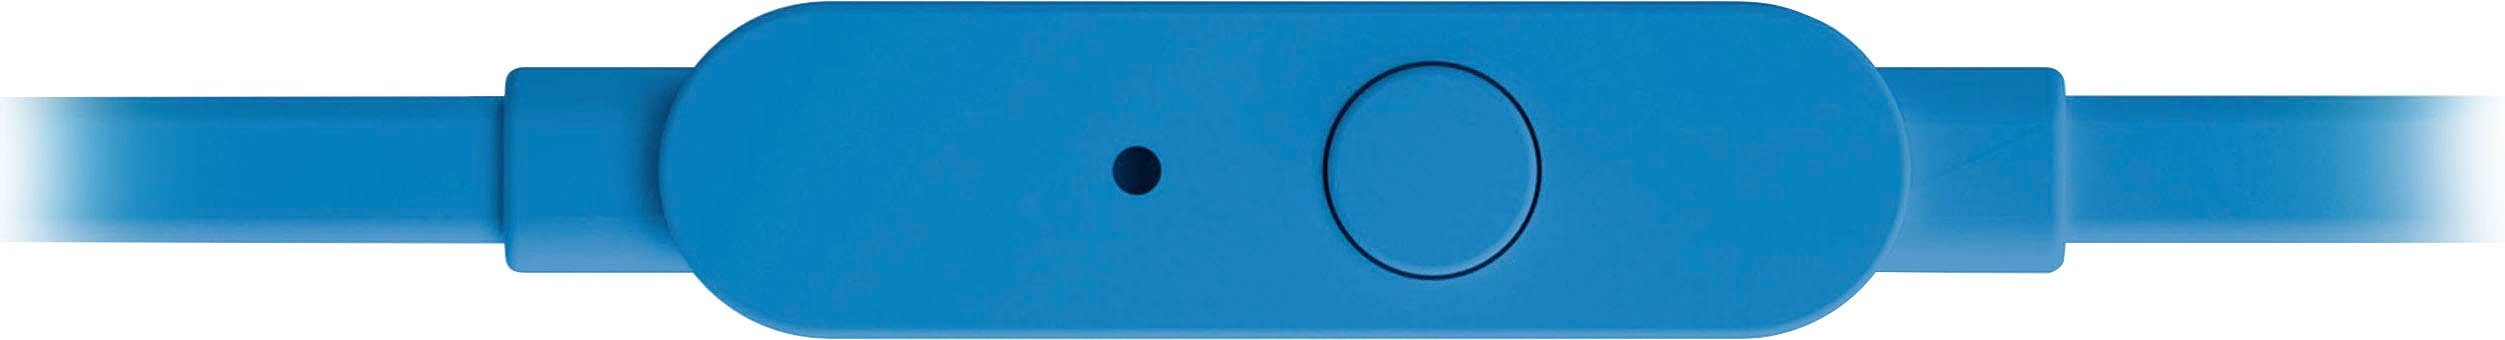 JBL In-Ear-Kopfhörer T110 blau